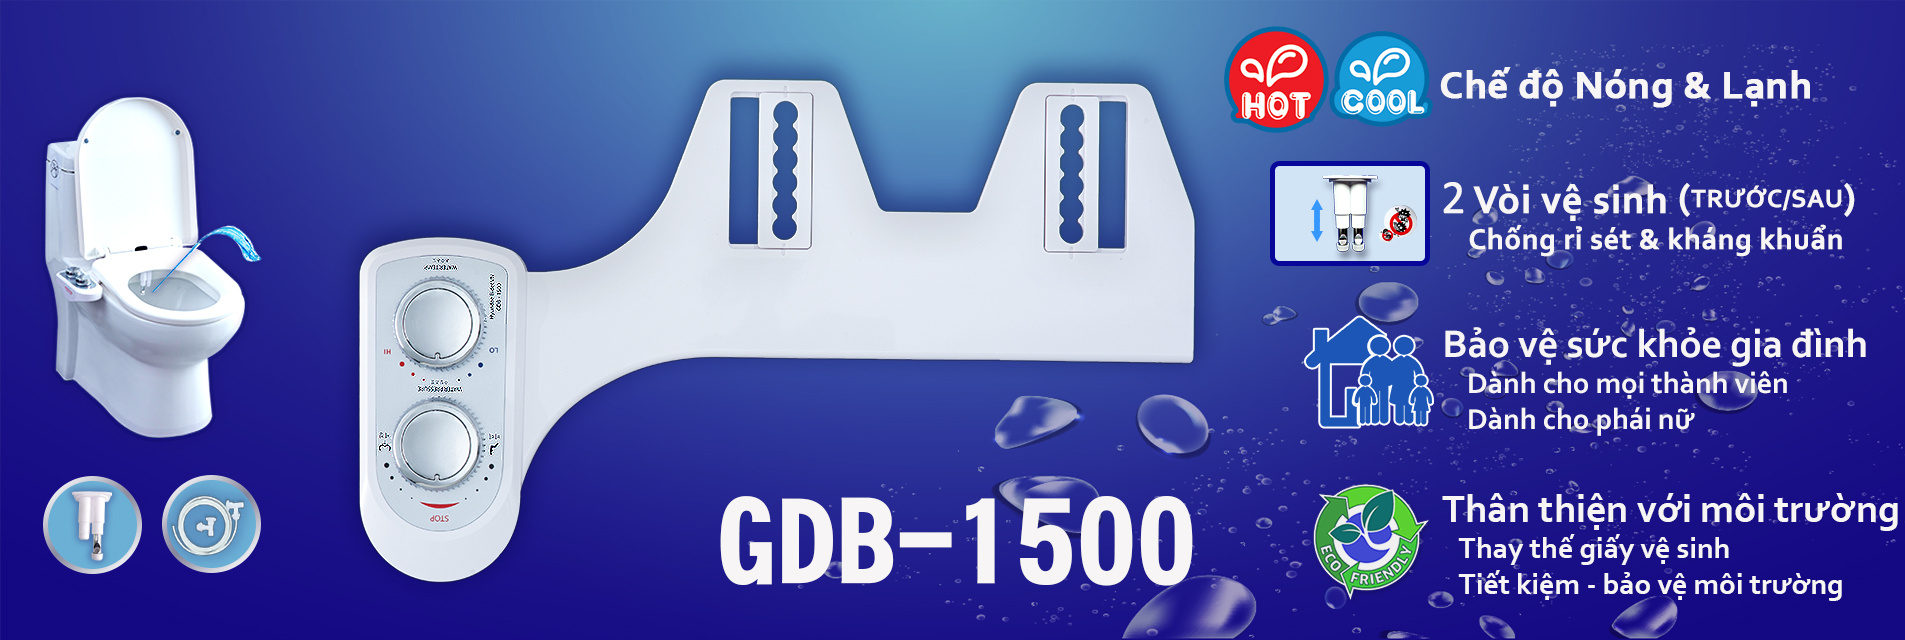 GDB-1500 Sản phẩm vệ sinh Nóng & Lạnh (SP rời)